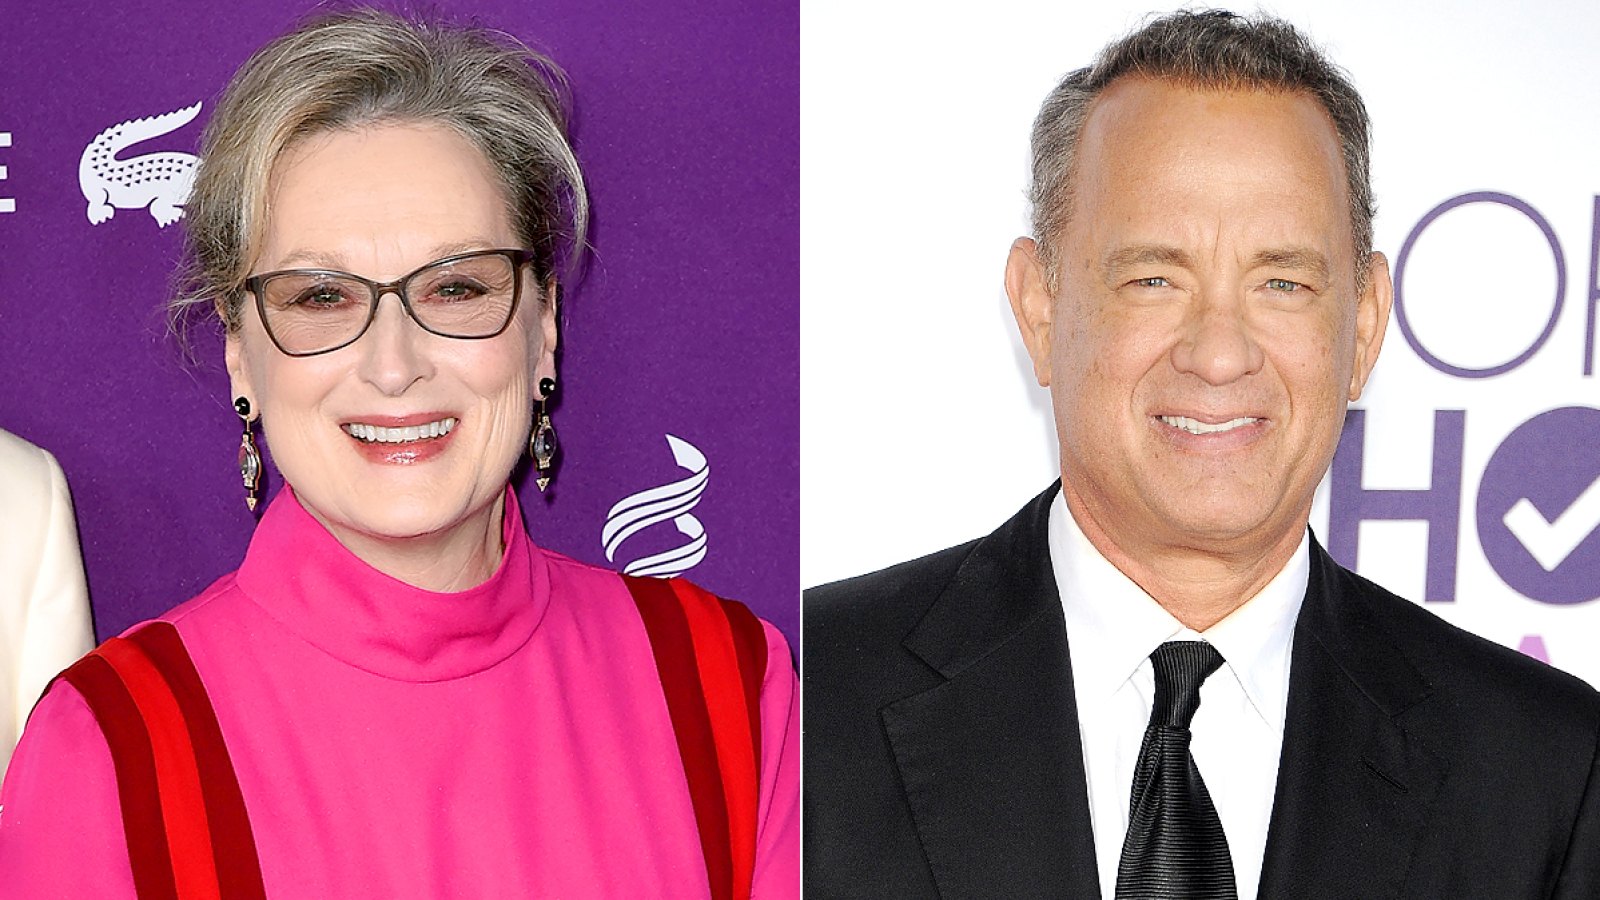 Meryl Streep and Tom Hanks